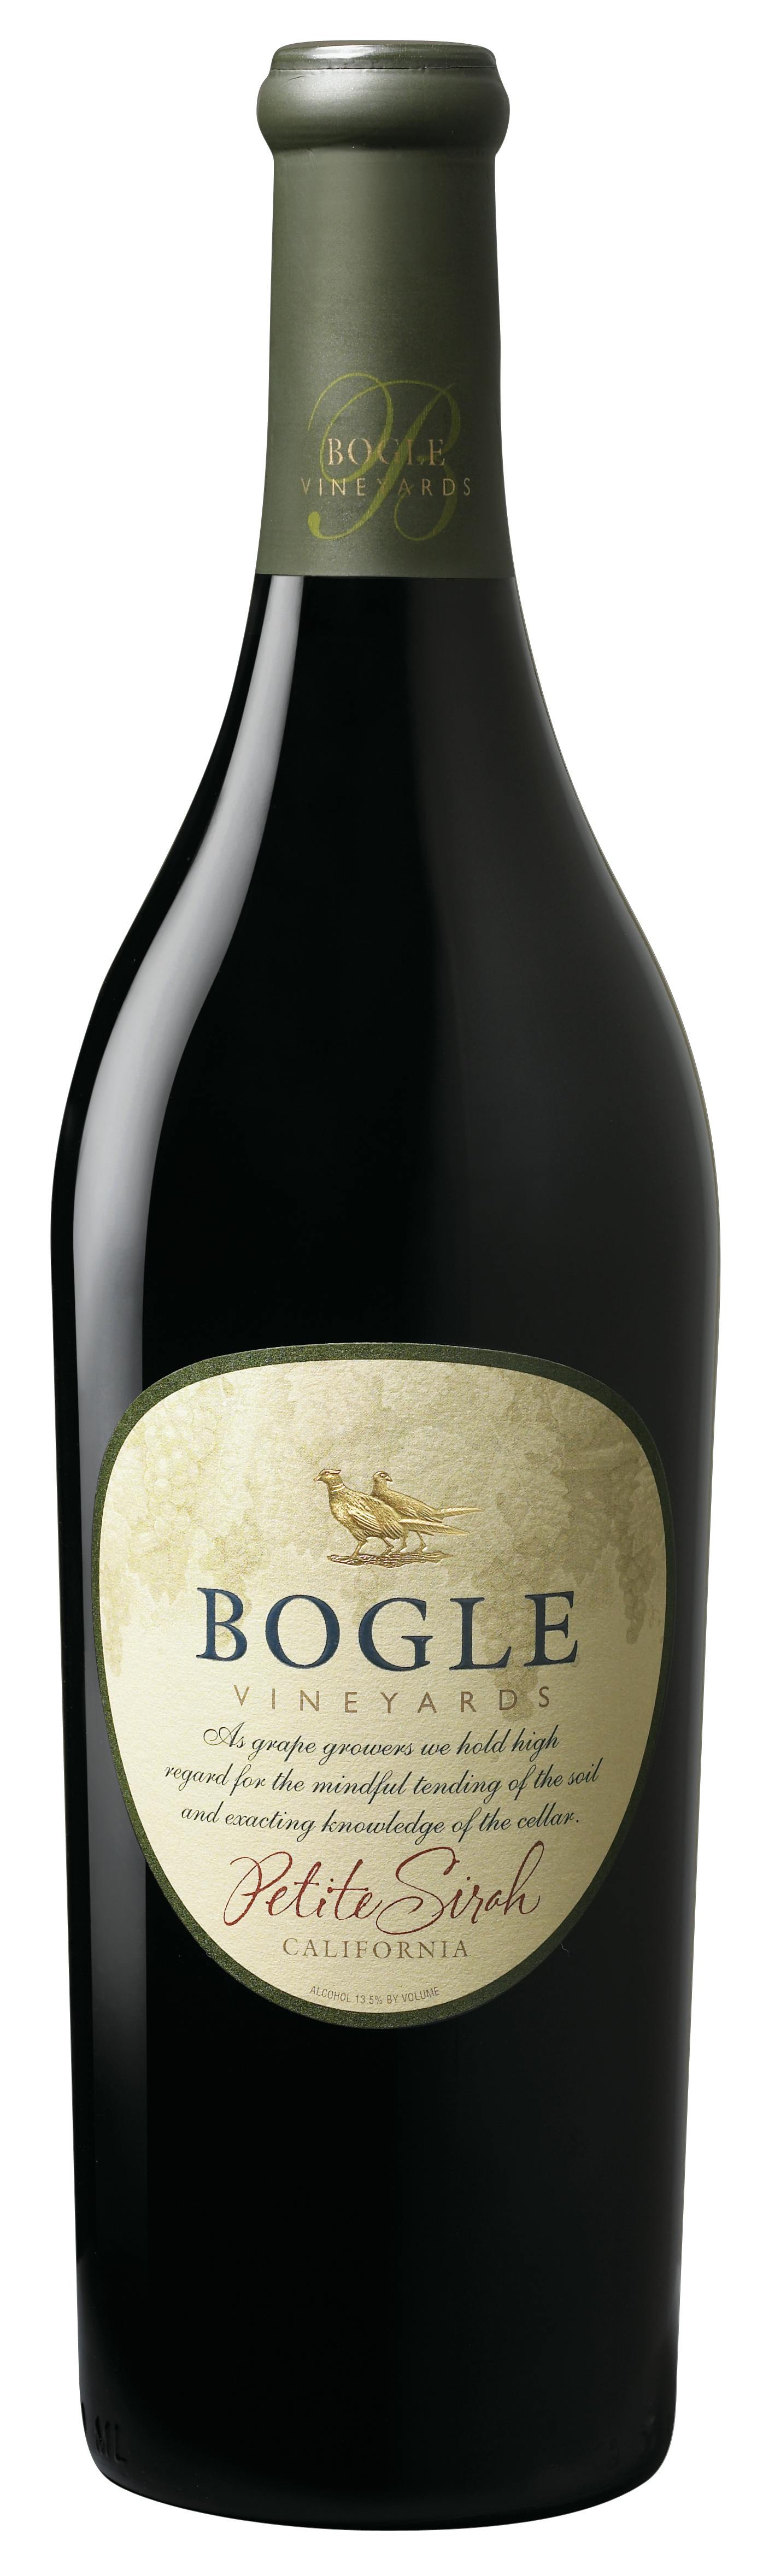 bogle-petite-sirah-750ml-argonaut-wine-liquor